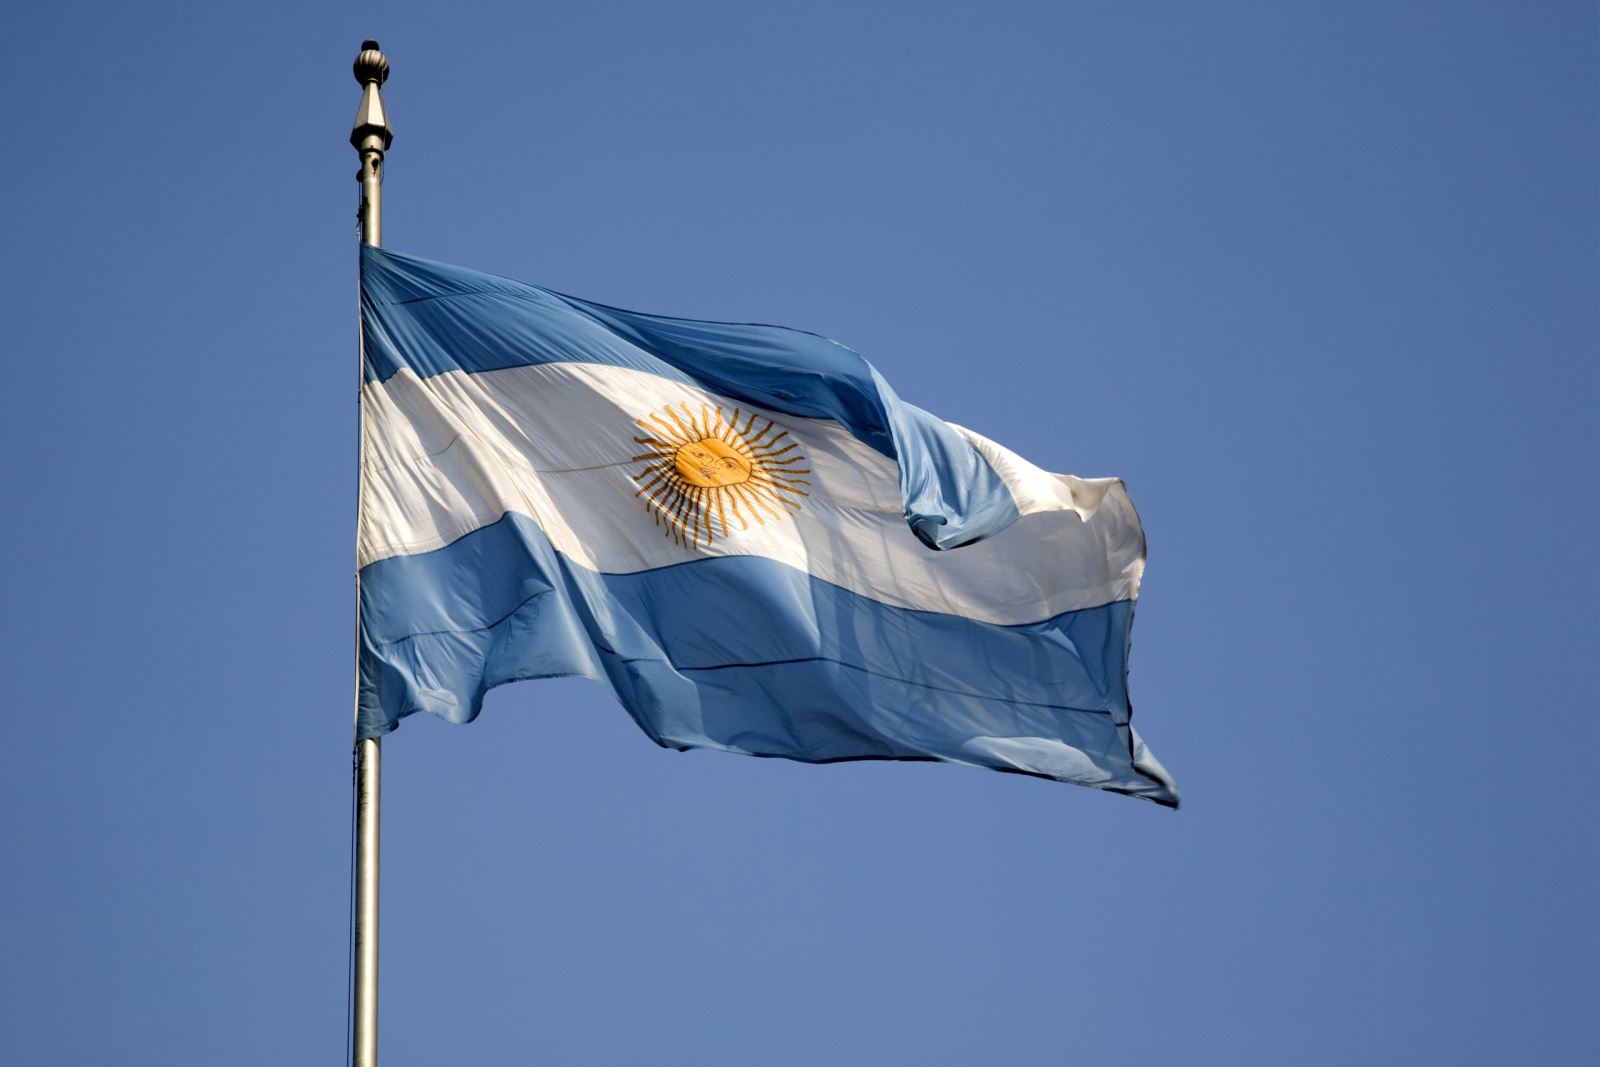 Cờ Argentina là biểu tượng khẳng định uy tín và văn hóa của quốc gia Nam Mỹ này. Tháng Năm được coi là một trong những sự kiện quan trọng nhất của lịch sử Argentina, với sự đập nổ của bom bẩn ngào ở Buenos Aires. Ngày nay, điện kỷ niệm được xây dựng để vinh danh các nạn nhân và ghi nhớ sự kiện đó, và cờ Argentina vẫn luôn được tỏ ra ca tụng và tôn trọng như một biểu tượng của sự đoàn kết và chính nghĩa.